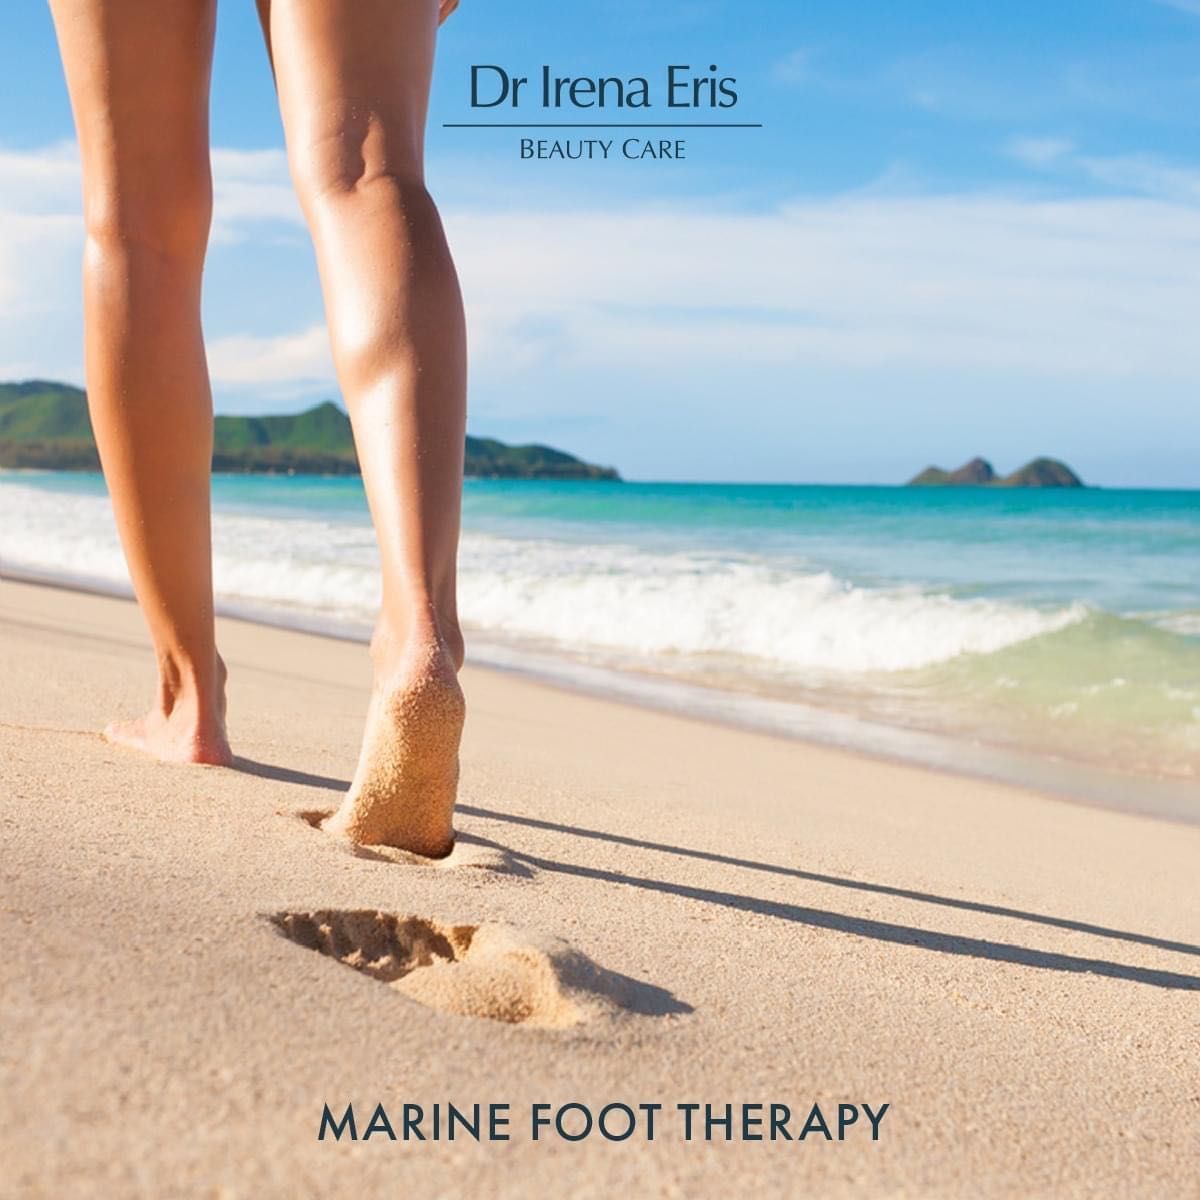 Portfolio usługi MARINE FOOT THERAPY Dr Irena Eris zabieg na stopy